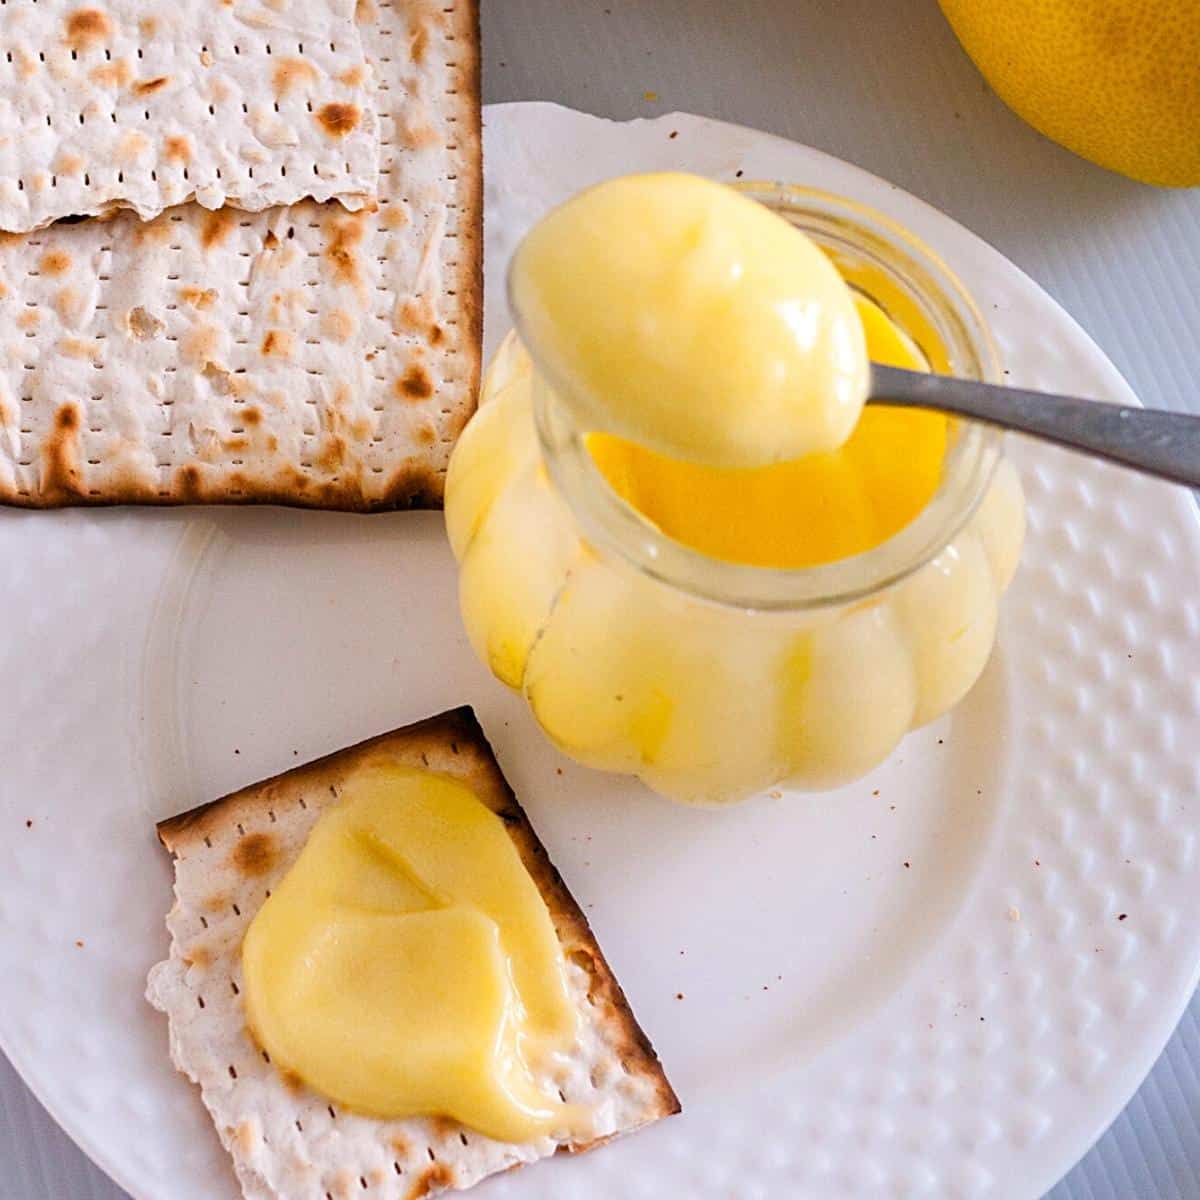 Curd with fresh lemon over a toast.